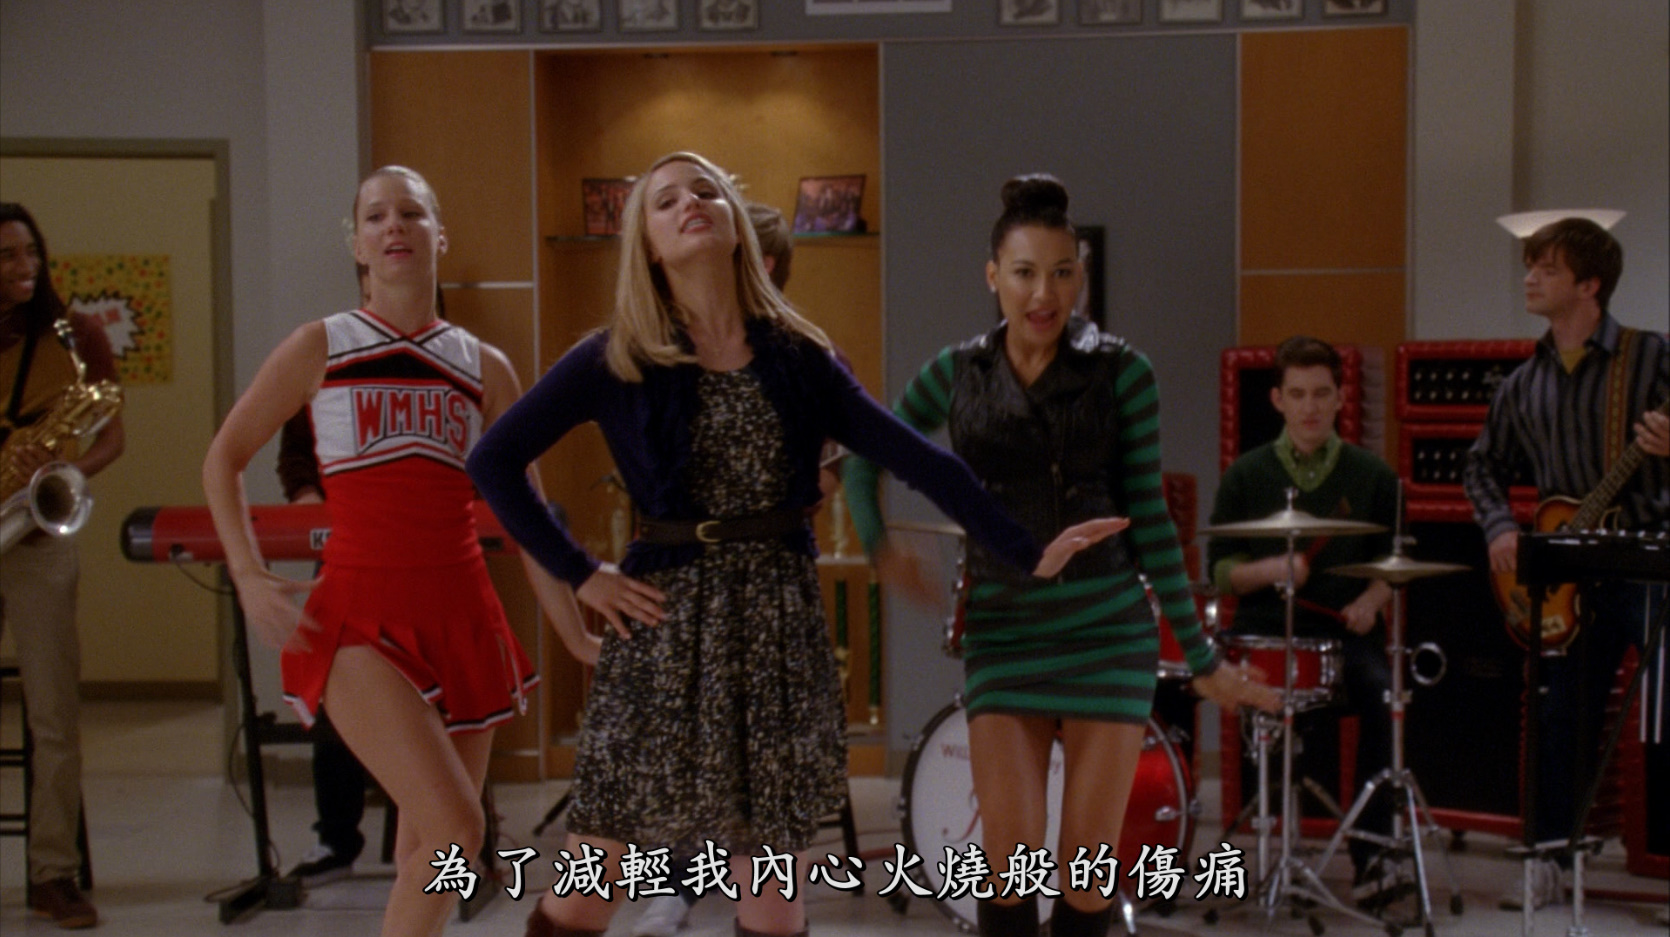 欢乐合唱团 第四季 全22集 [DIY 网飞官方简繁字幕] Glee S04 2012 1080p BluRay DTS-HD MA5.1 H.264-PWt@OurBits[182.49GB]-9.jpg